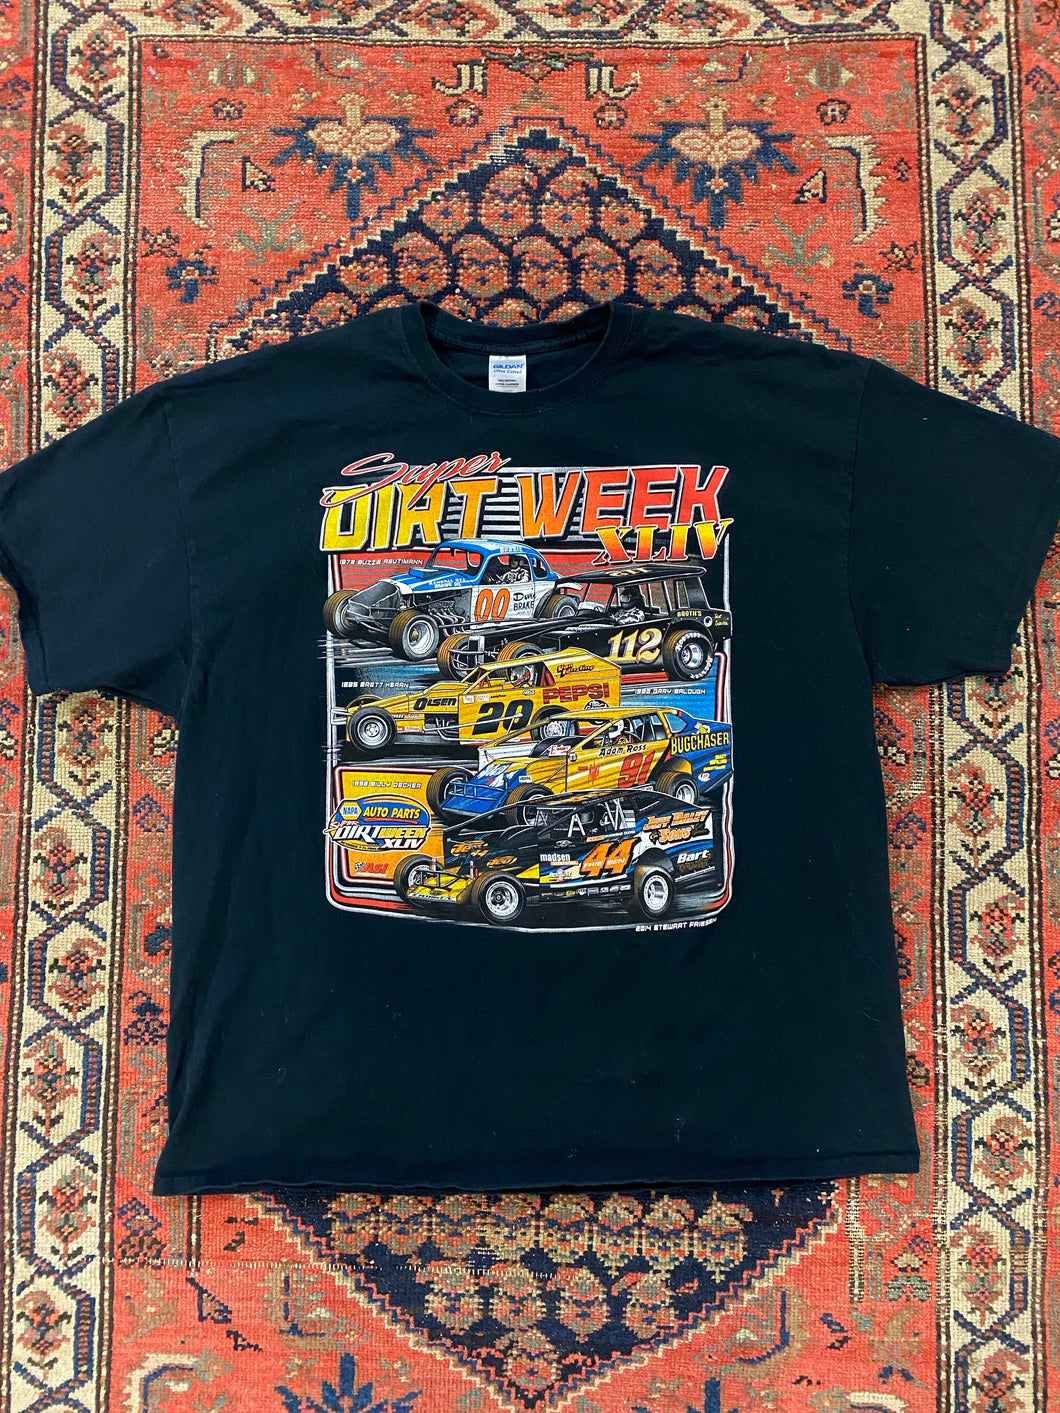 Vintage NASCAR T Shirt - XL